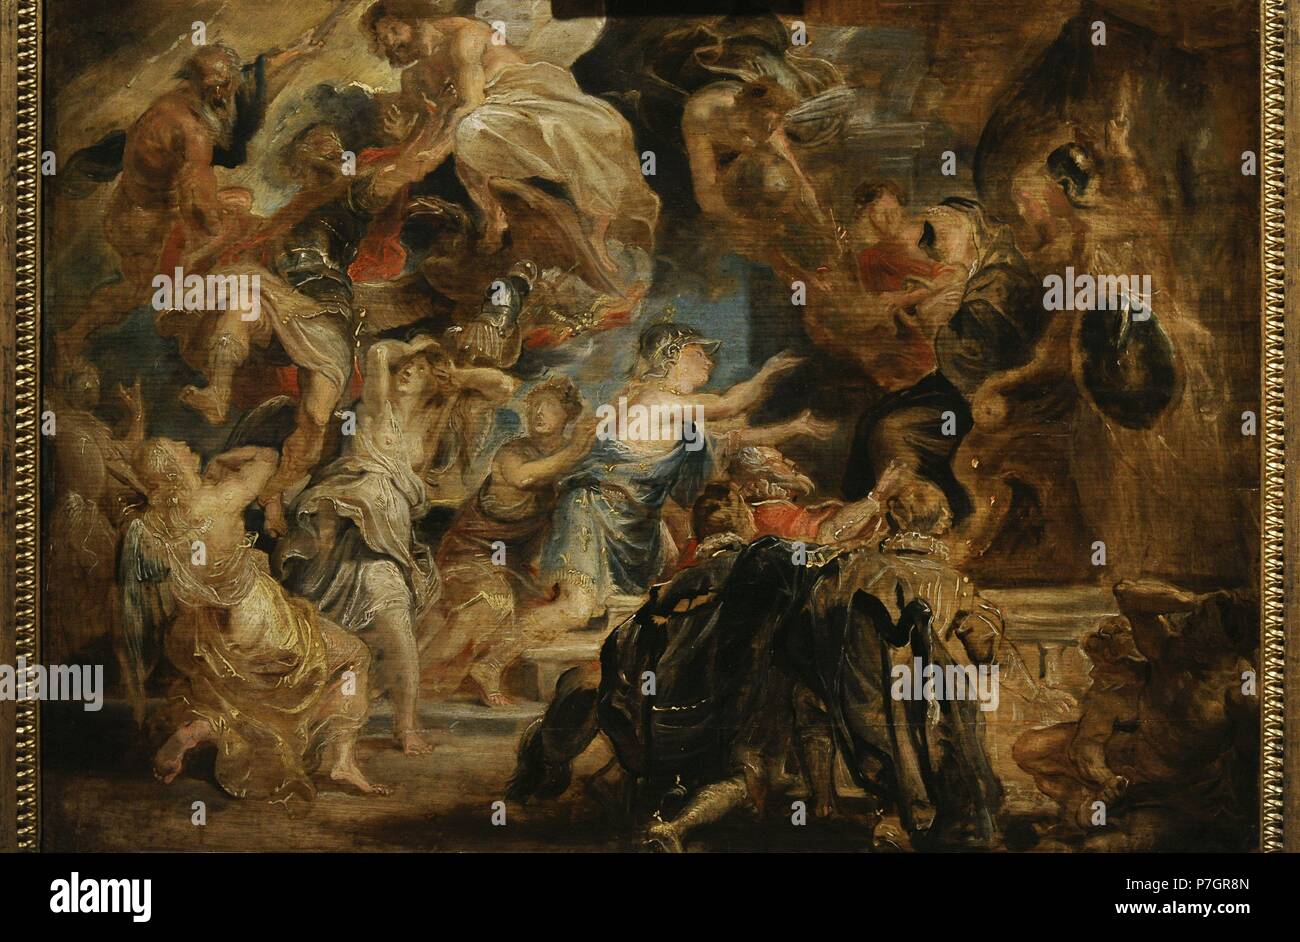 Rubens (1577-1640). Flämischen Barock Maler. Der Tod von Heinrich IV. und die Verkündigung des Regency, 1622. Öl auf Holz. Die Eremitage. Sankt Petersburg. Russland. Stockfoto